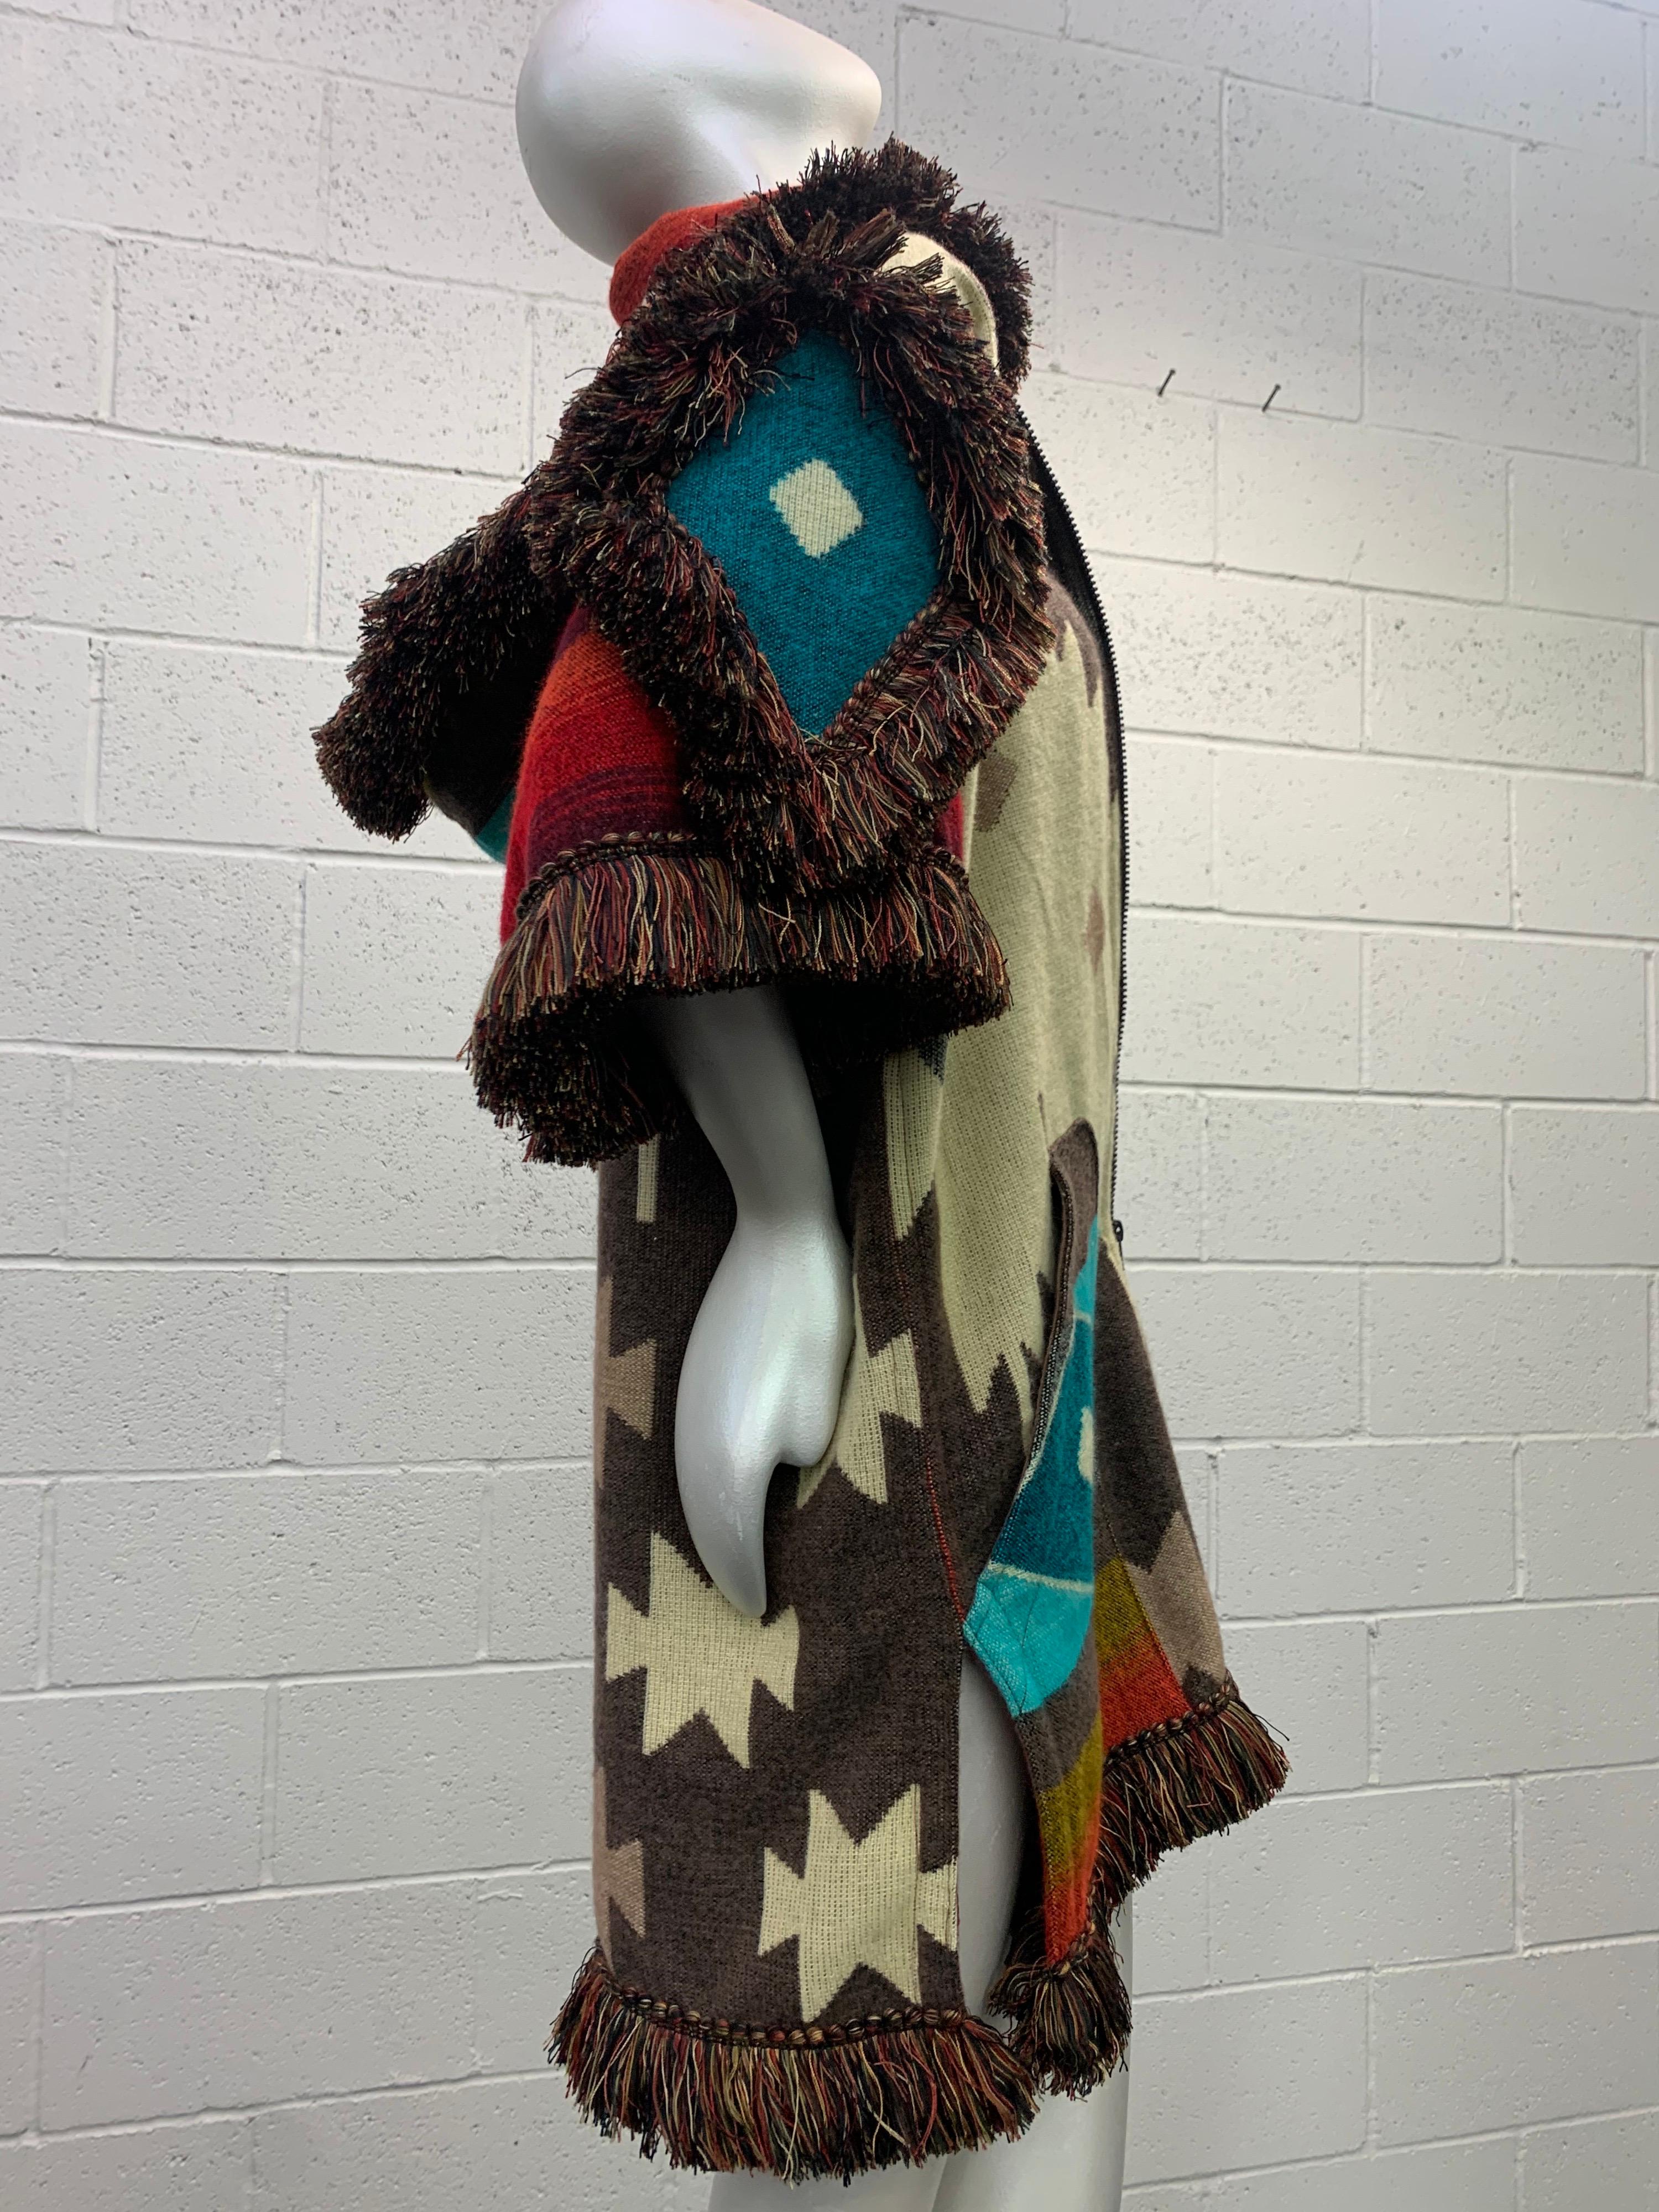 Aus unserem Torso Creations Atelier kommt diese in Ecuador gefertigte, ultraweiche Wolldecke mit Kapuze und doppeltem Reißverschluss für Unisex.  Jacke mit Beuteltaschen und üppigen Fransen aus Viskose in Ombre.

Das kühne Motiv im traditionellen